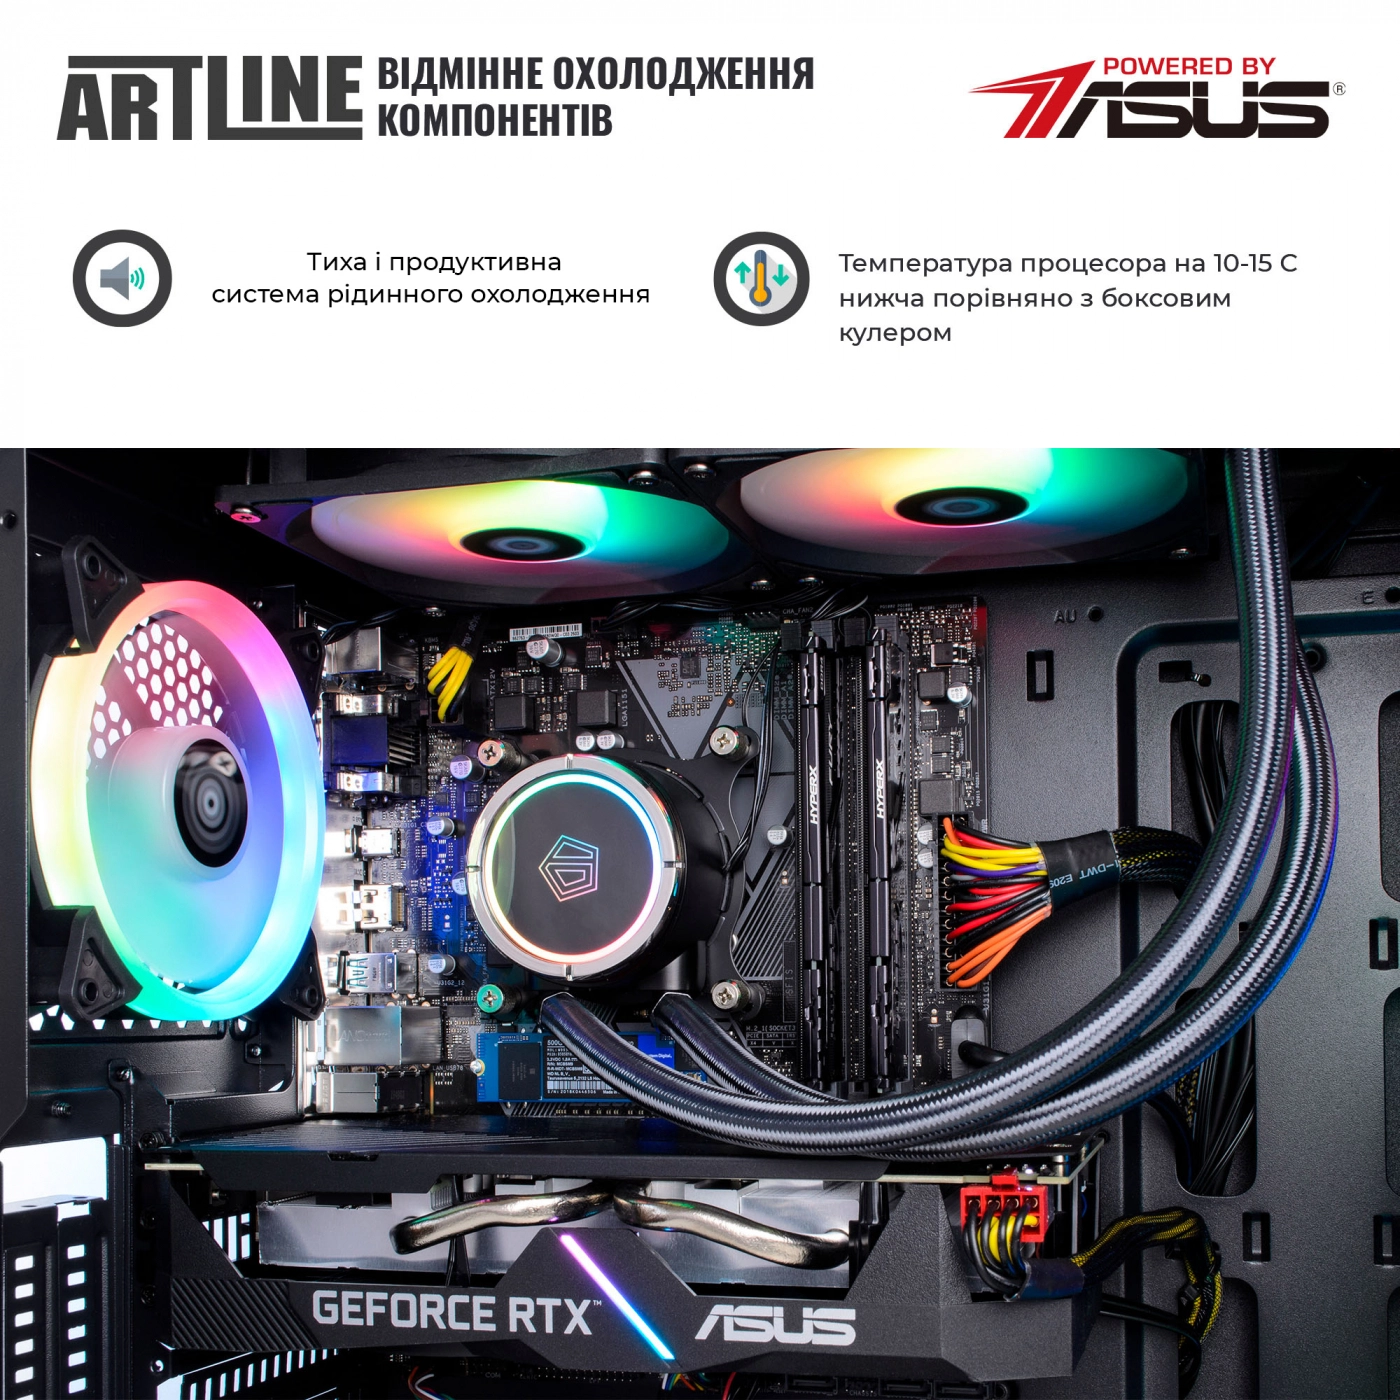 Купить Компьютер ARTLINE Gaming X77v53 - фото 4